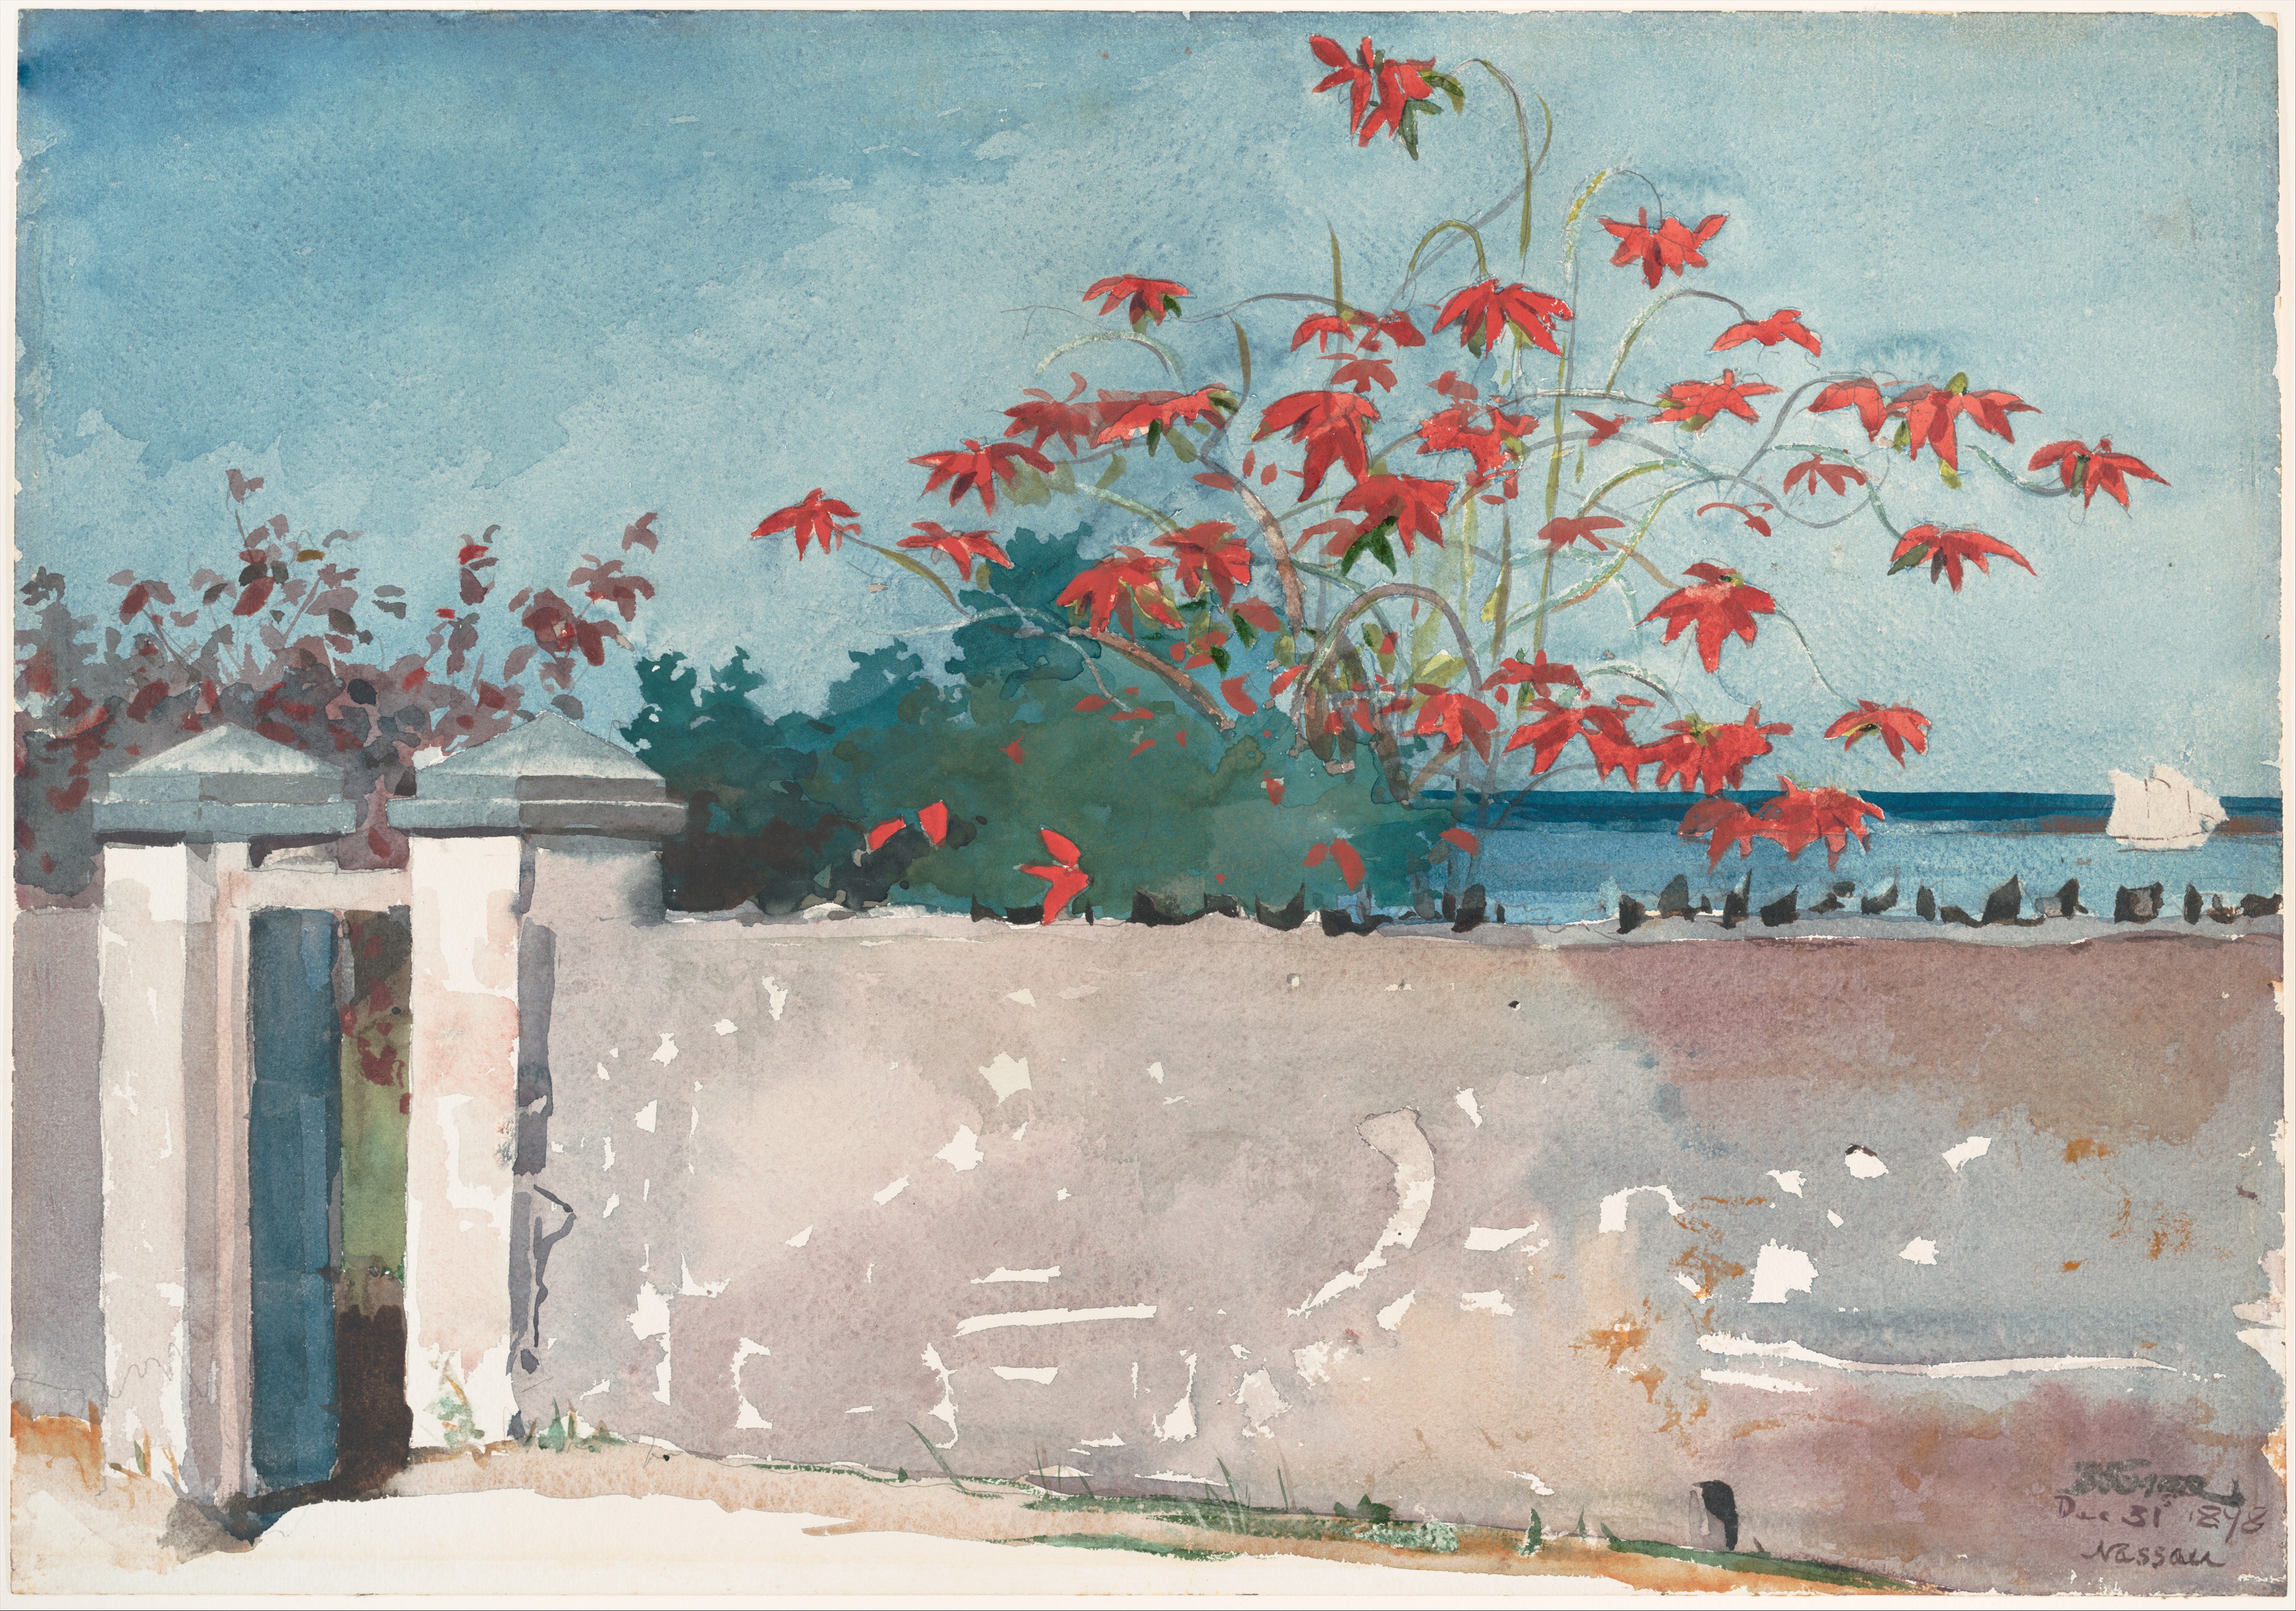 A Wall, Nassau - Winslow Homer - 1898